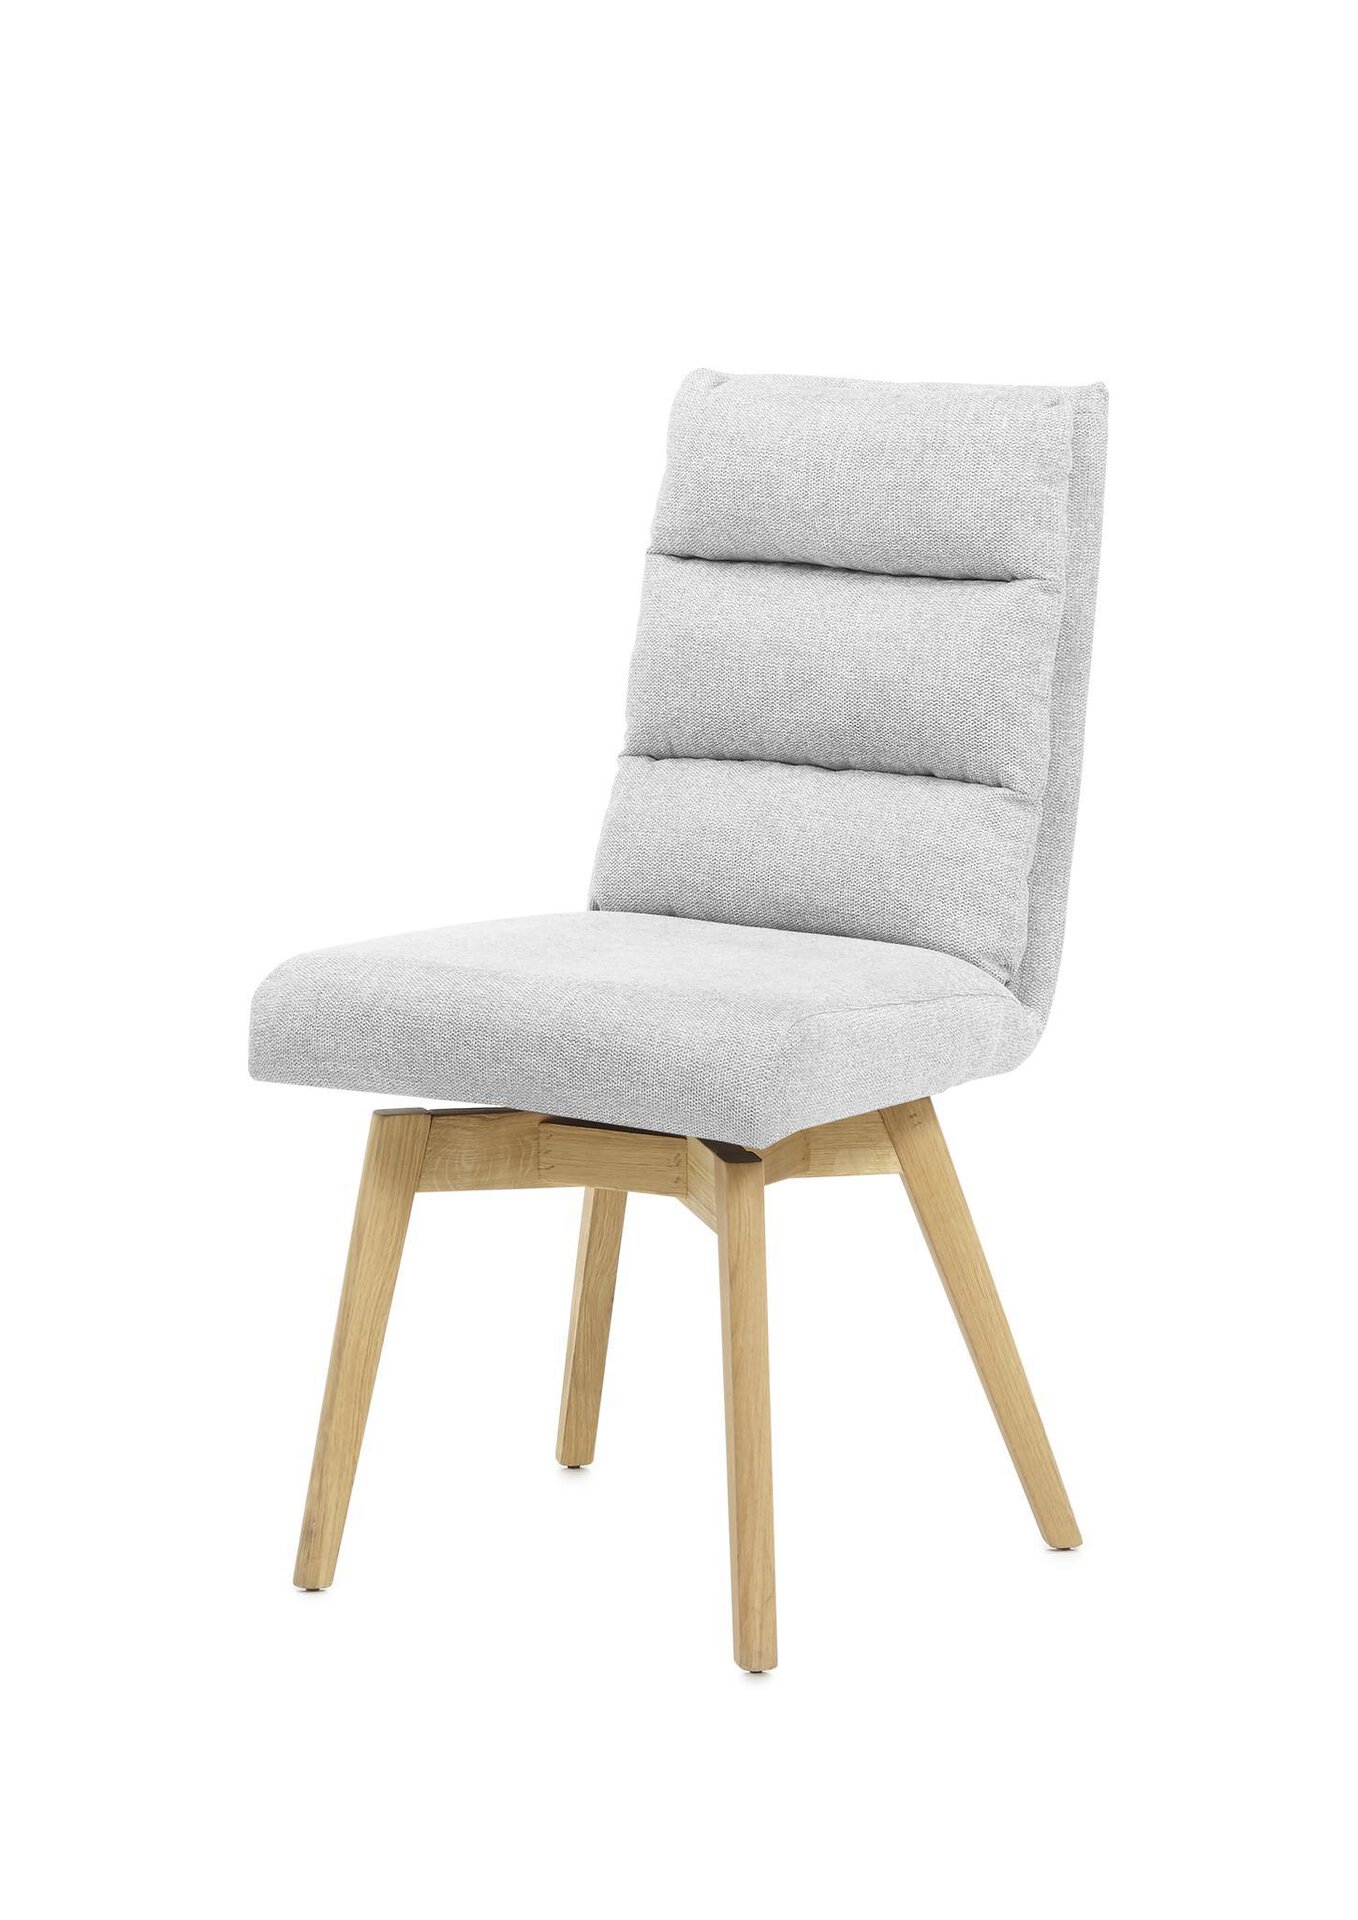 Möbel MCA Inhofer furniture Holz | Stuhl